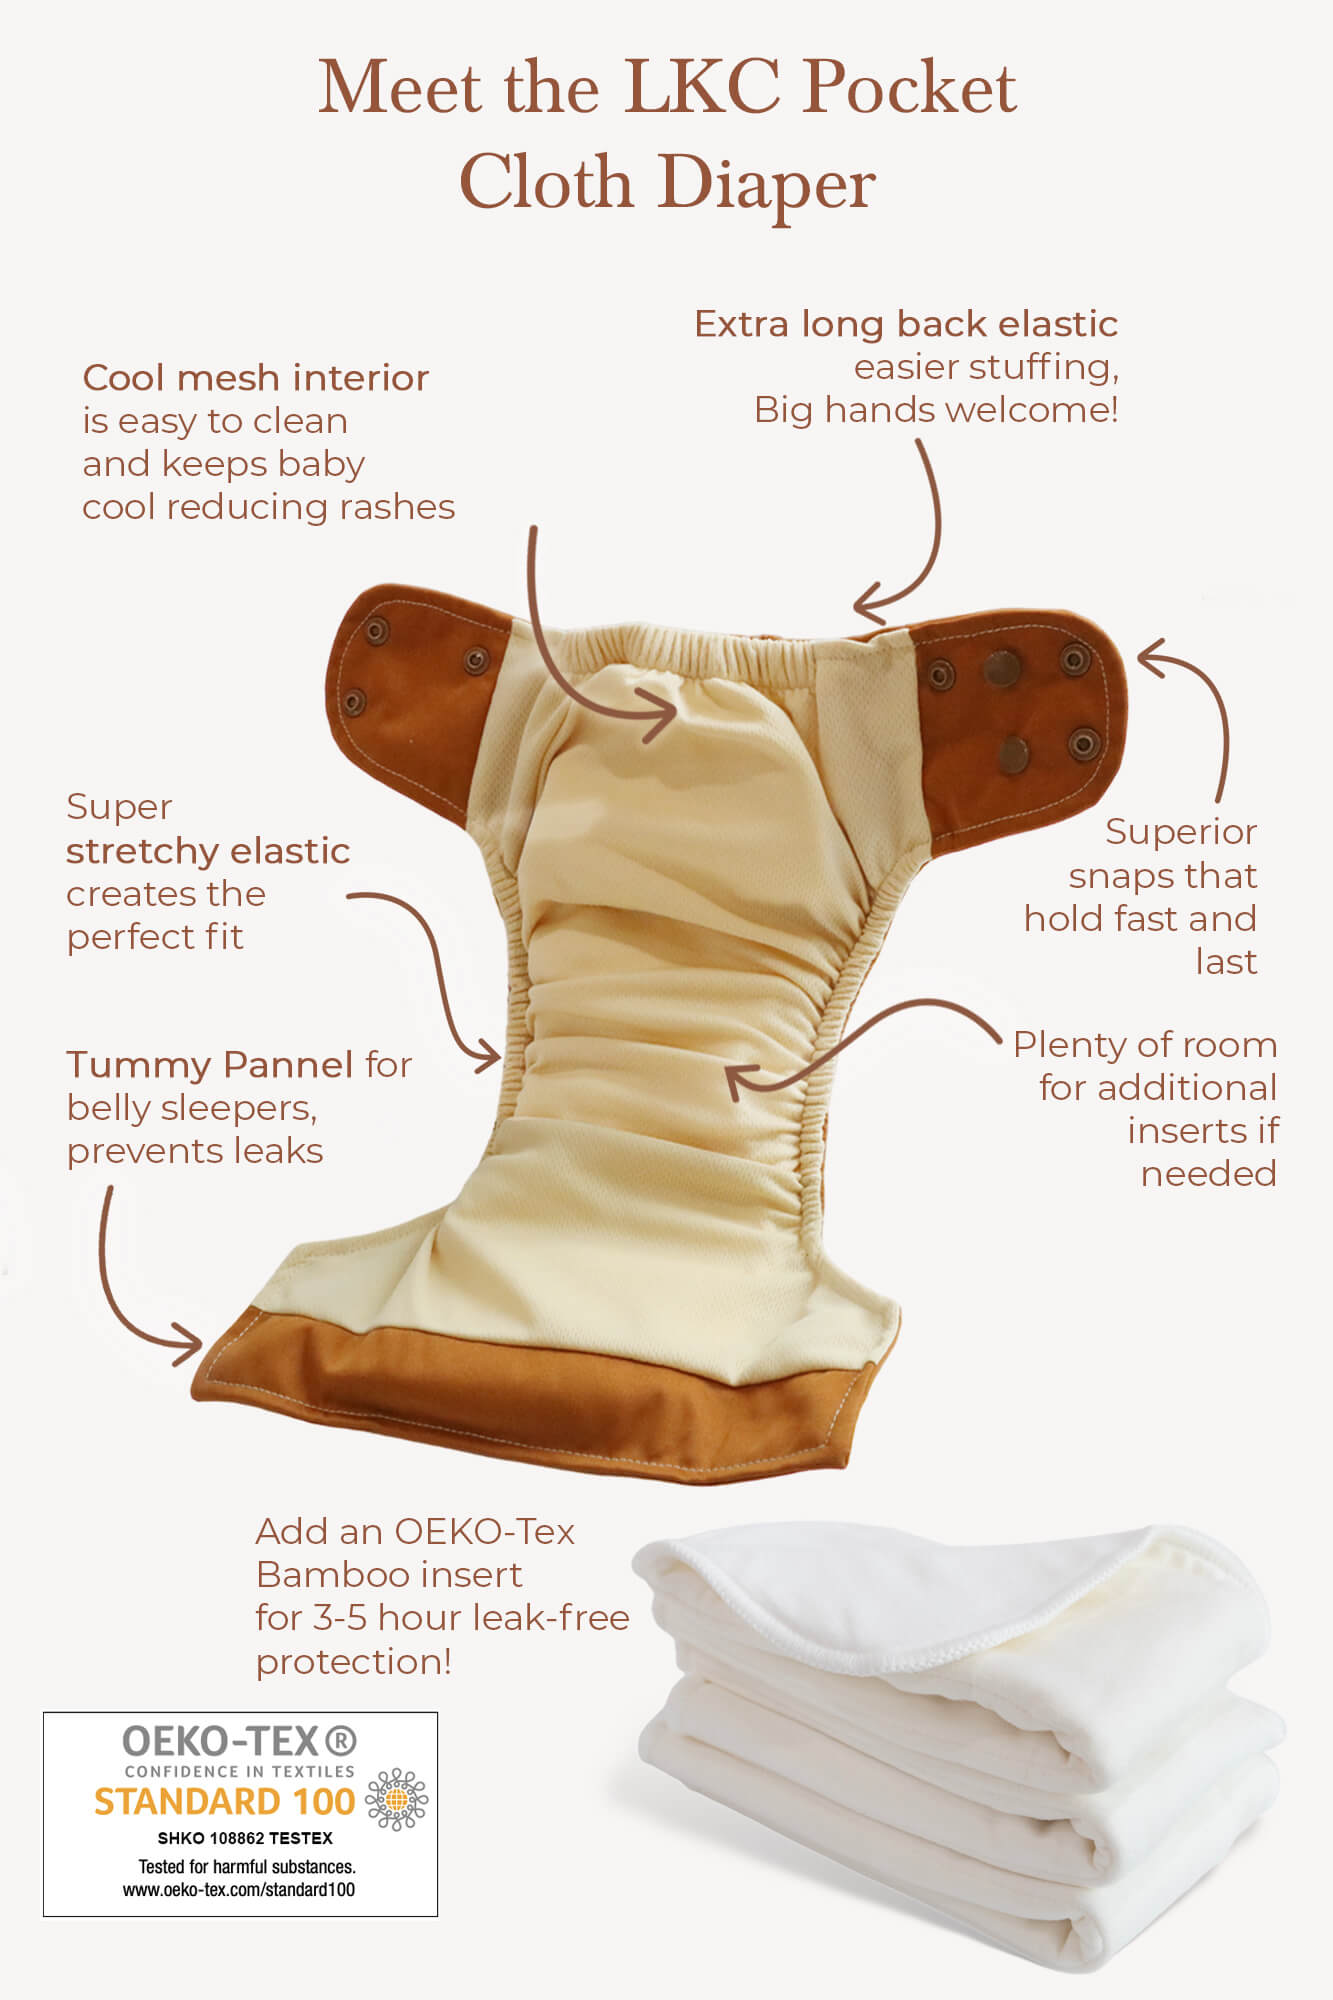 Pocket Cloth Diaper